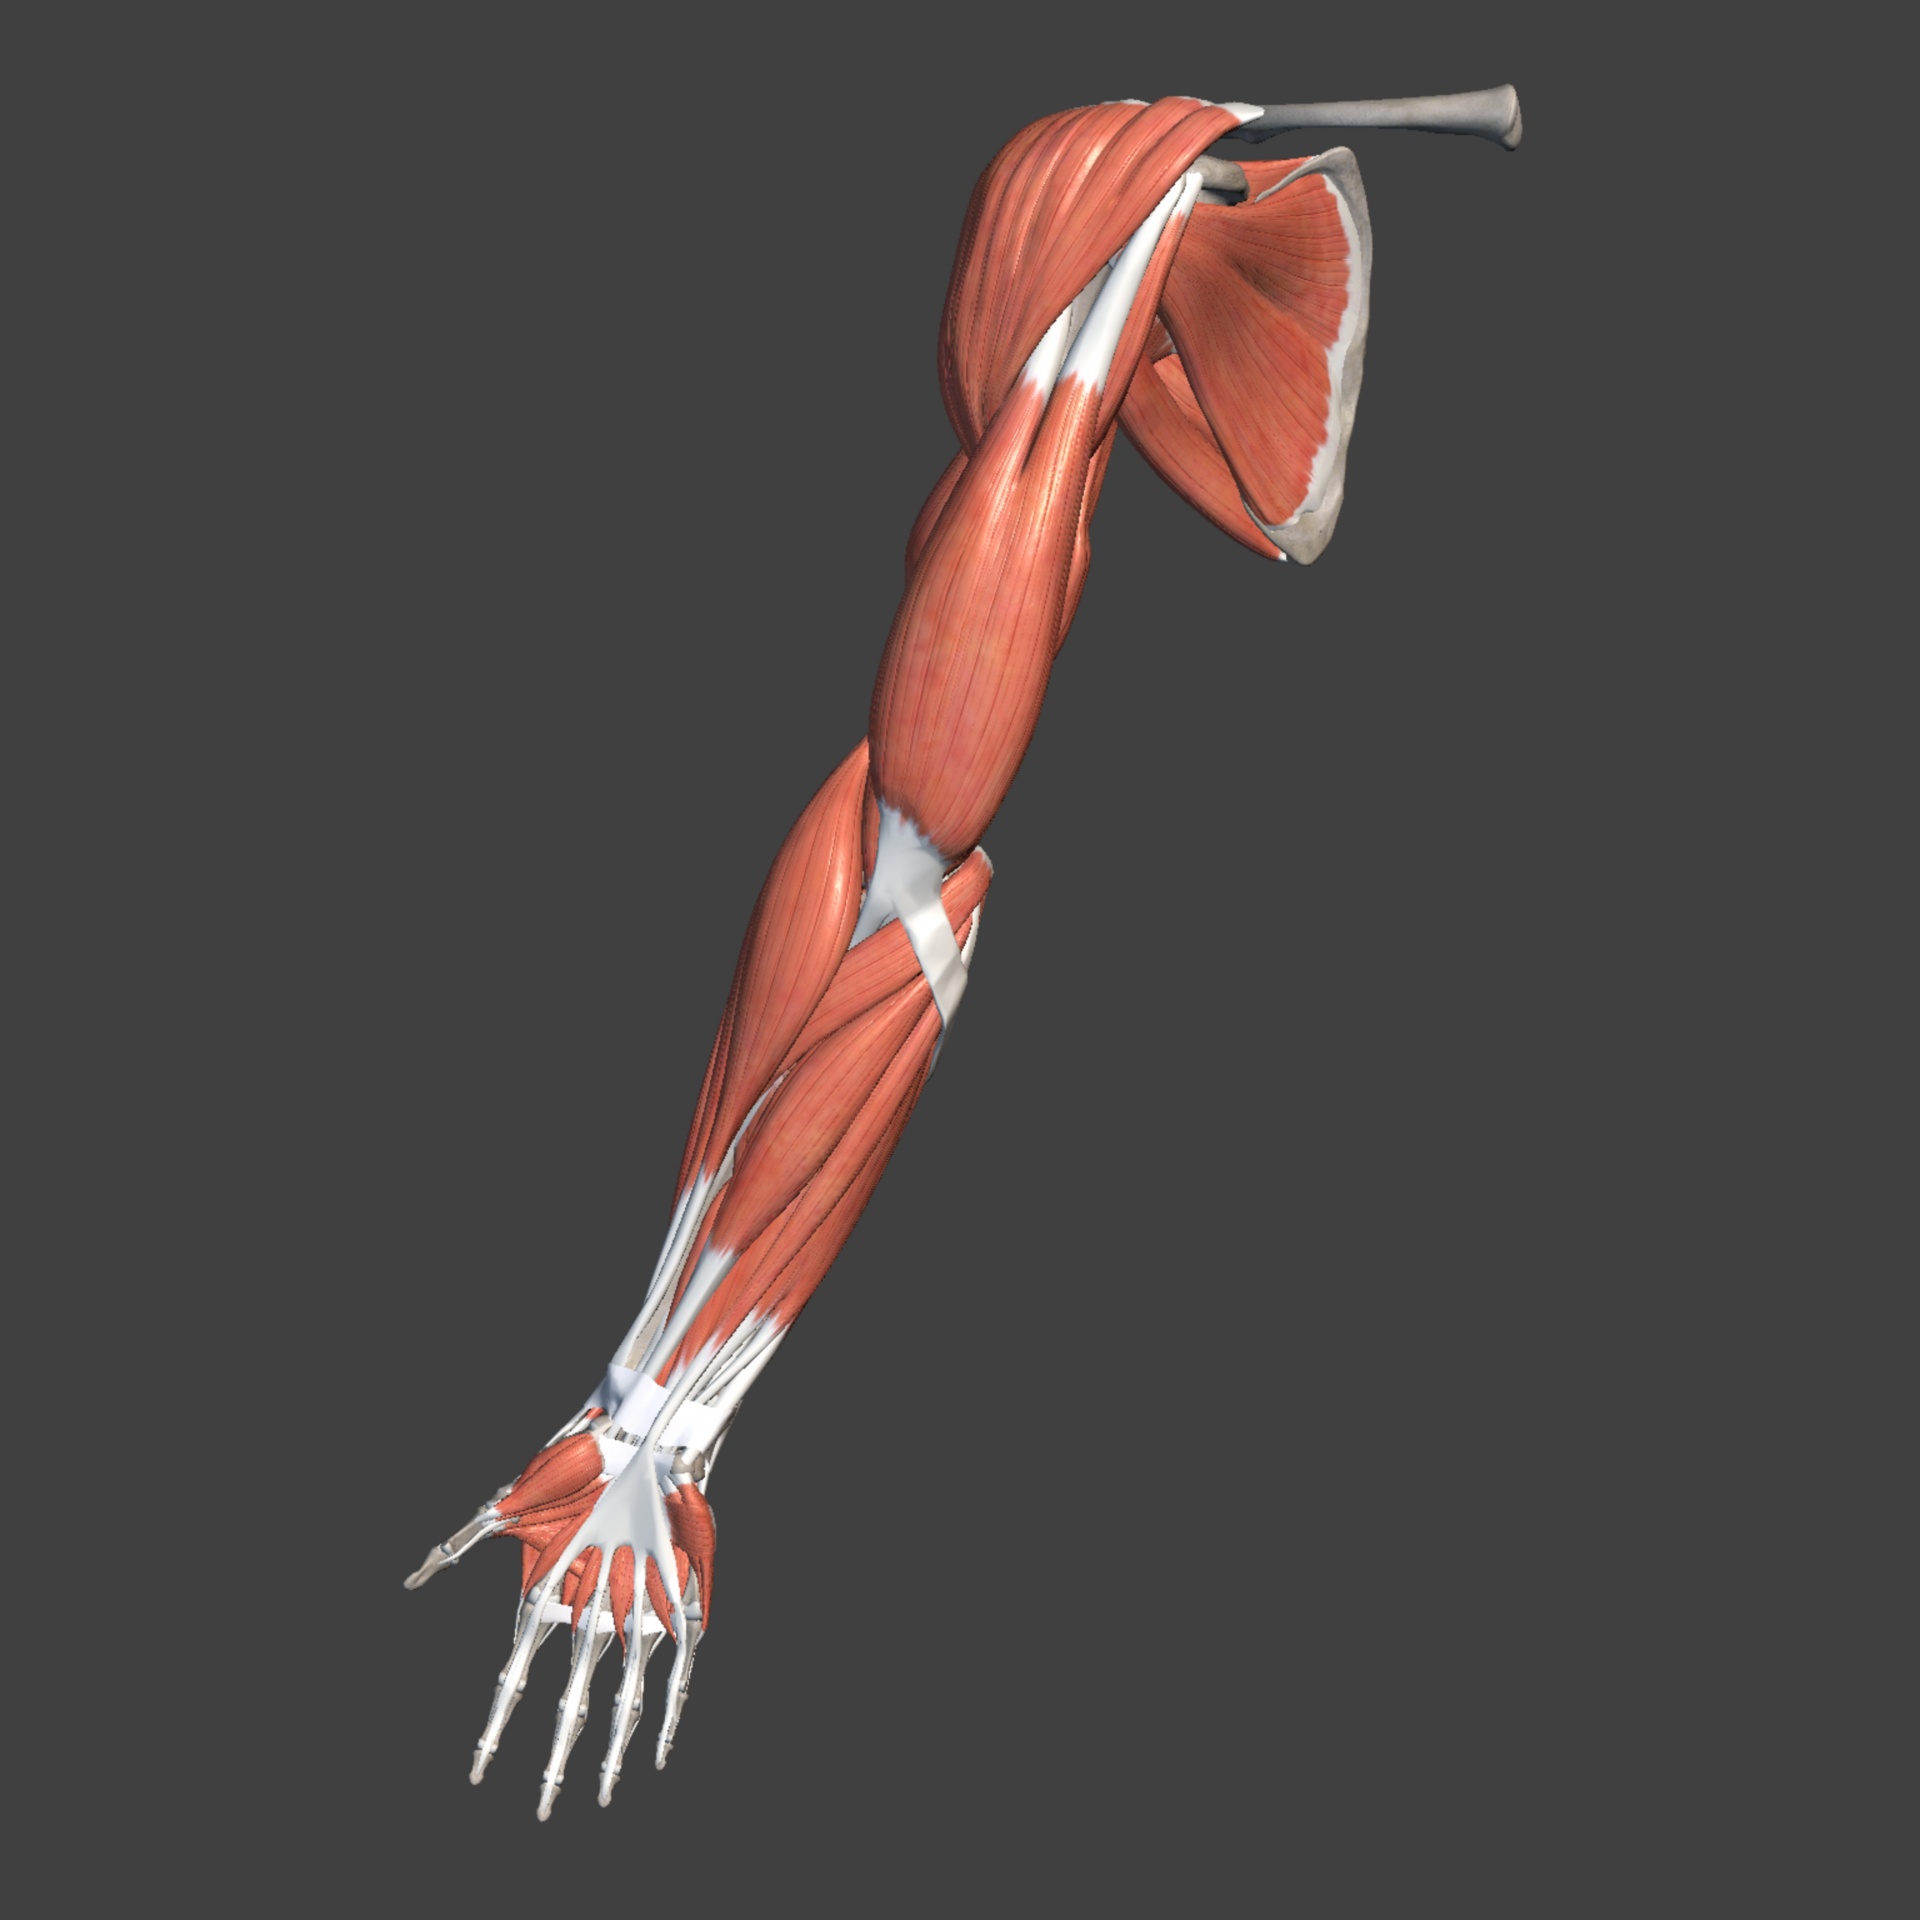 Анатомия мышц рук человека. Двуглавая мышца плеча мышцы верхней конечности. Мышцы свободной верхней конечности анатомия. Мышцы верхней конечности анатомия планшетки. Мышцы руки анатомия.